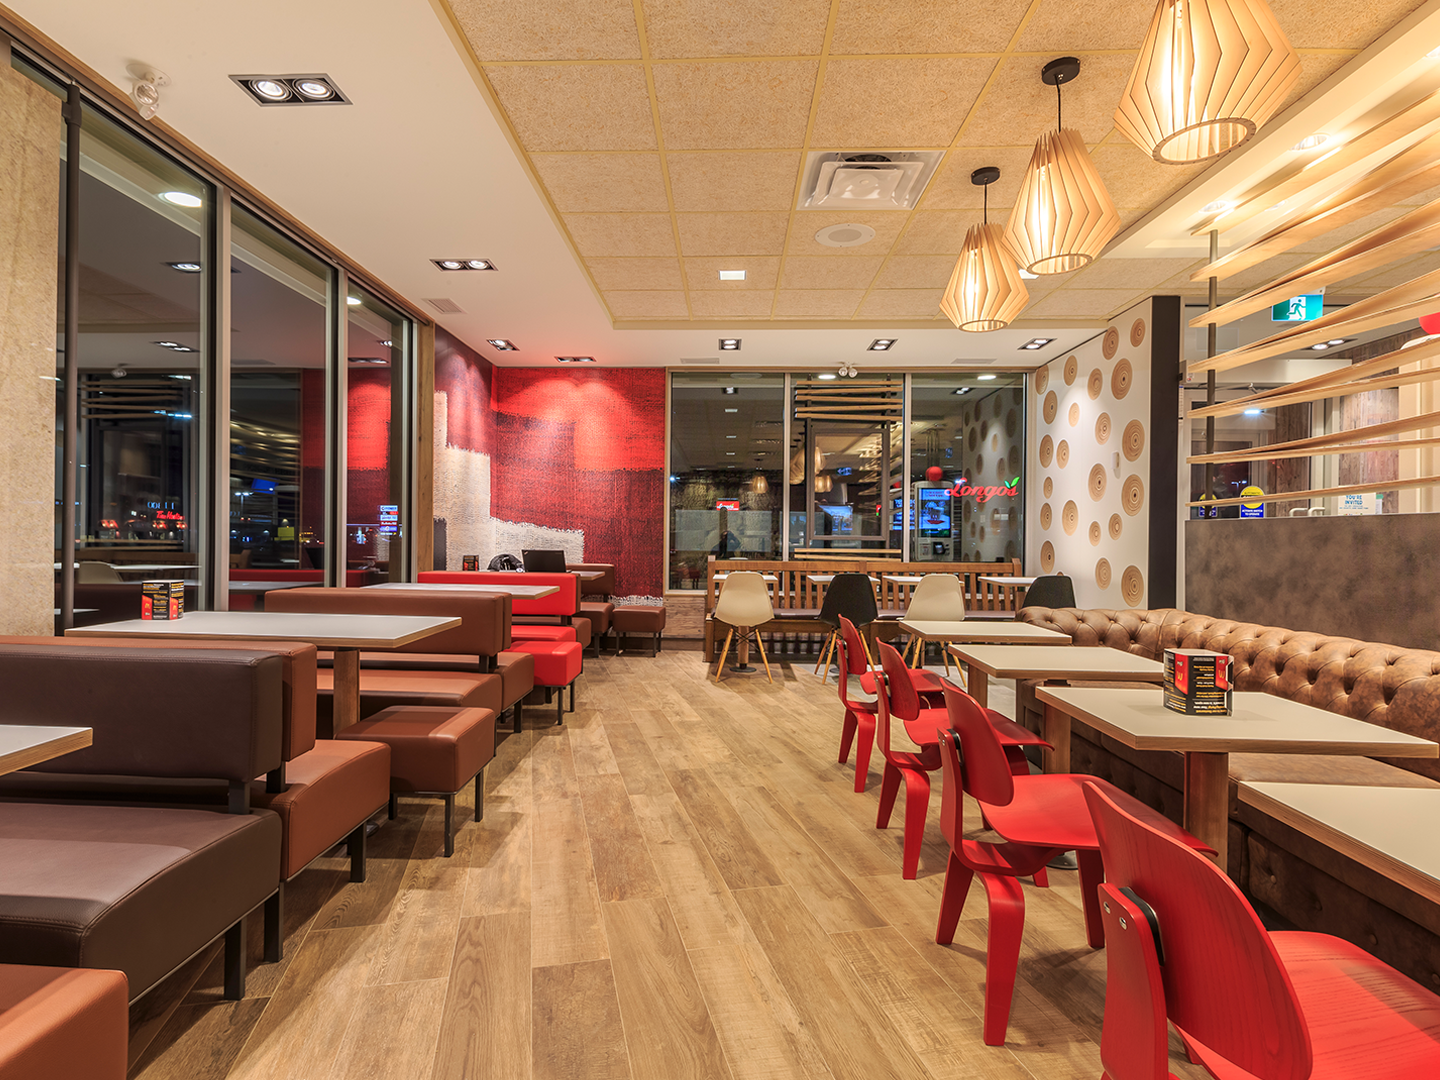 Conception de restaurant - Meubles de restauration sur mesure - McDonald's Wood & Stone - Luminaires sur mesure - Meubles sur mesure